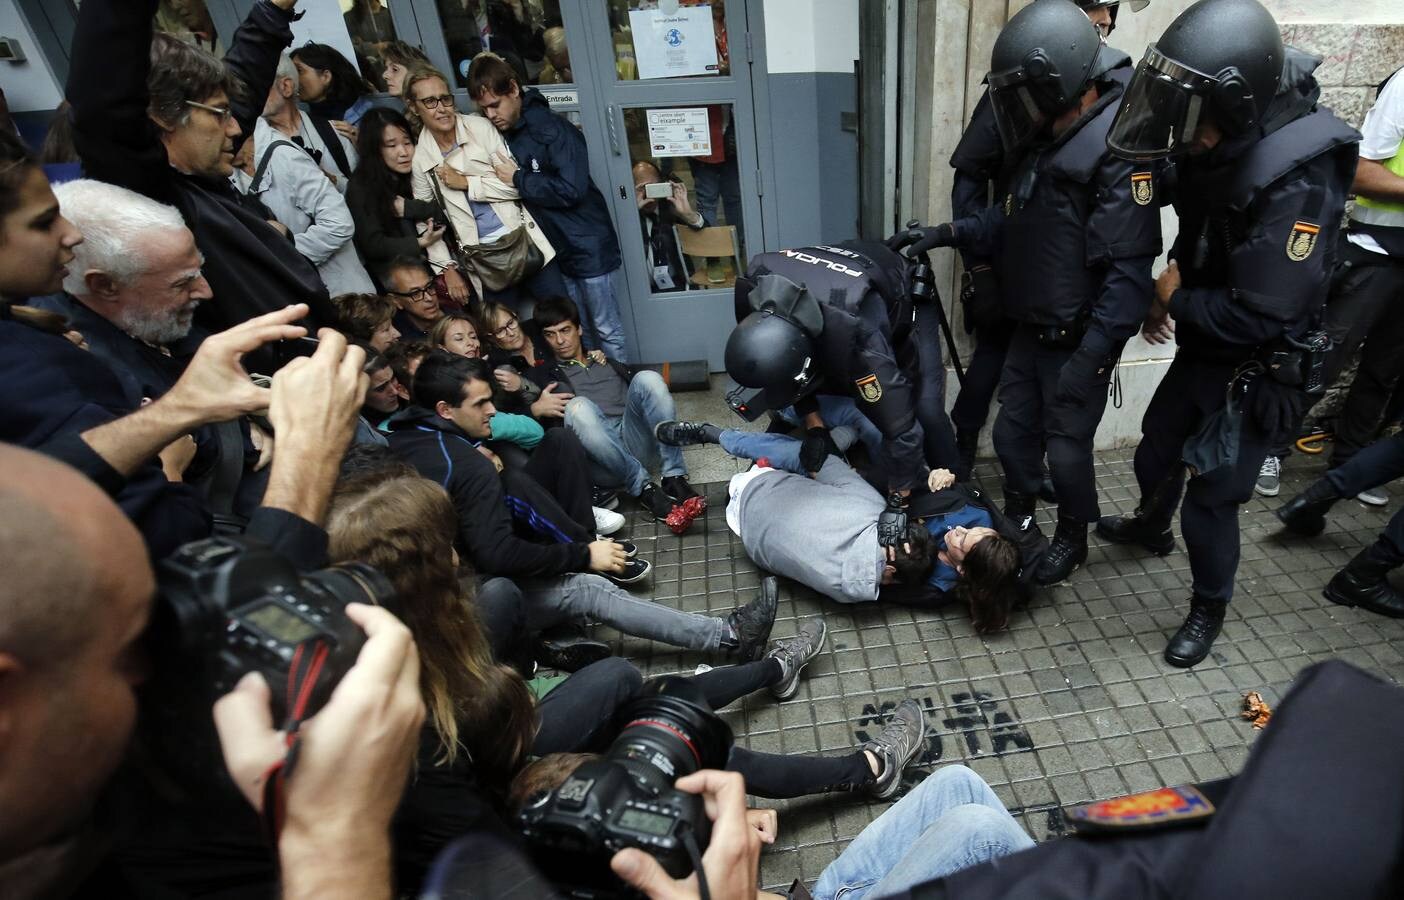 Un agente de la policía nacional arrastrando a uno ciudadanos concentrados ante un colegio electoral en Barcelona, durante la celebración del referéndum del 1-O, declarado ilegal por el Tribunal Constitucional.